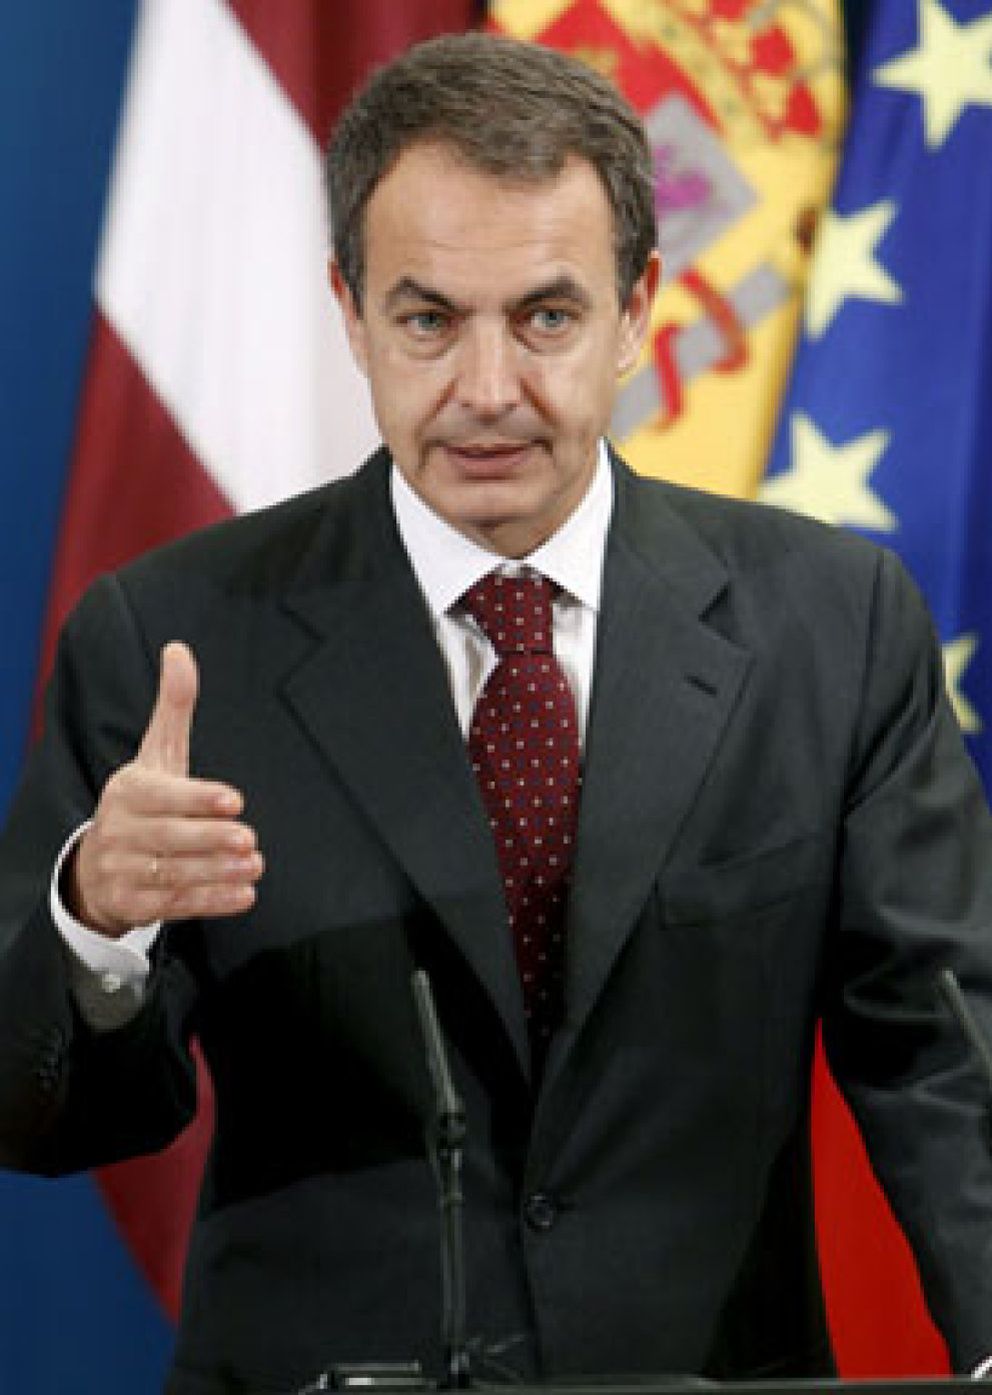 Foto: Zapatero espera una "gran sentencia" sobre el Estatuto de Cataluña por el que "voté a favor"